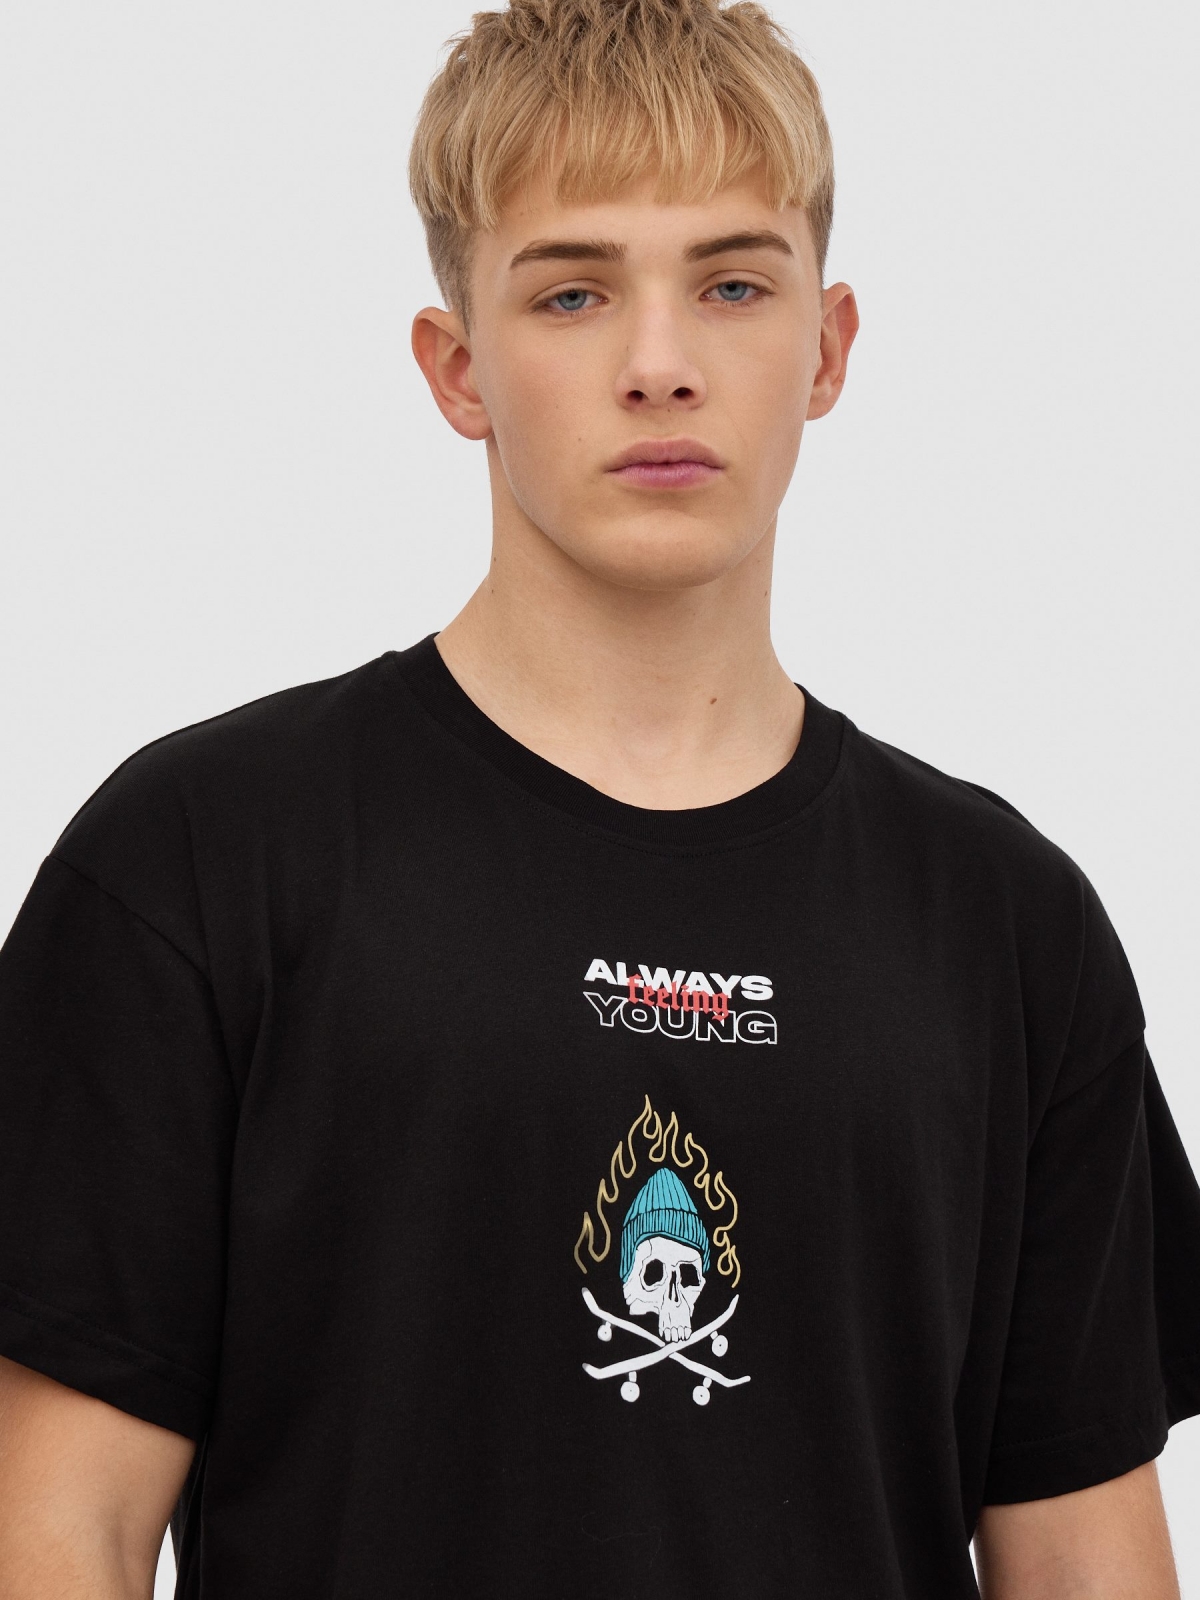 Camiseta calavera skater negro vista detalle